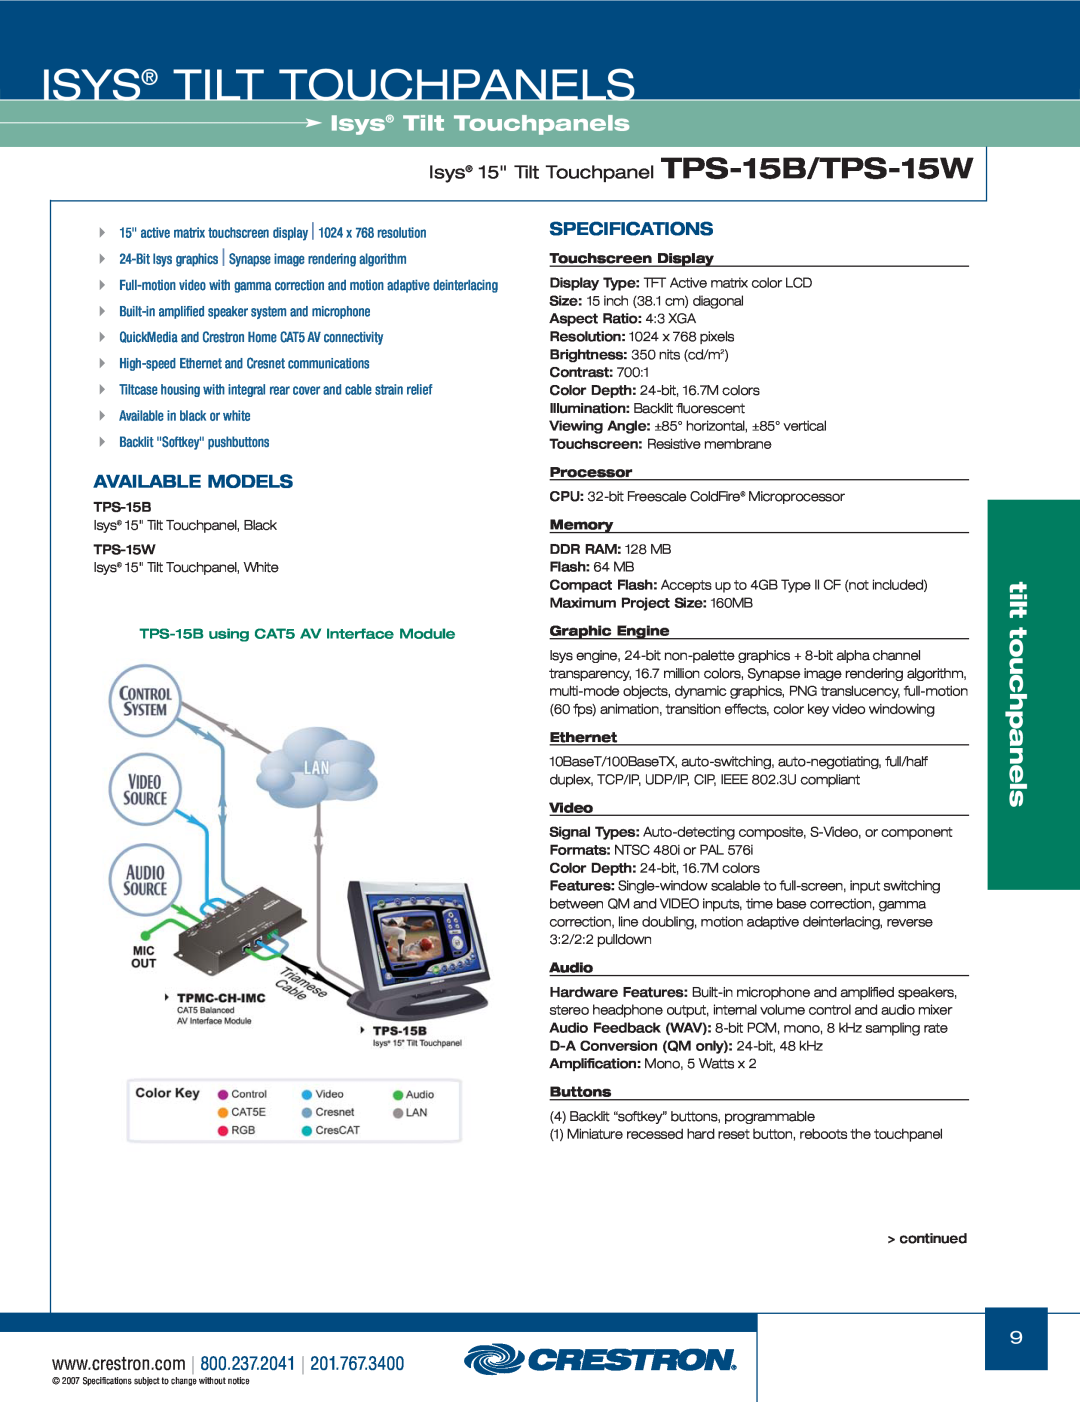 Crestron electronic TPS-17W tilt, touchpanels, Isys 15 Tilt Touchpanel TPS-15B/TPS-15W, Isys Tilt Touchpanels, Processor 